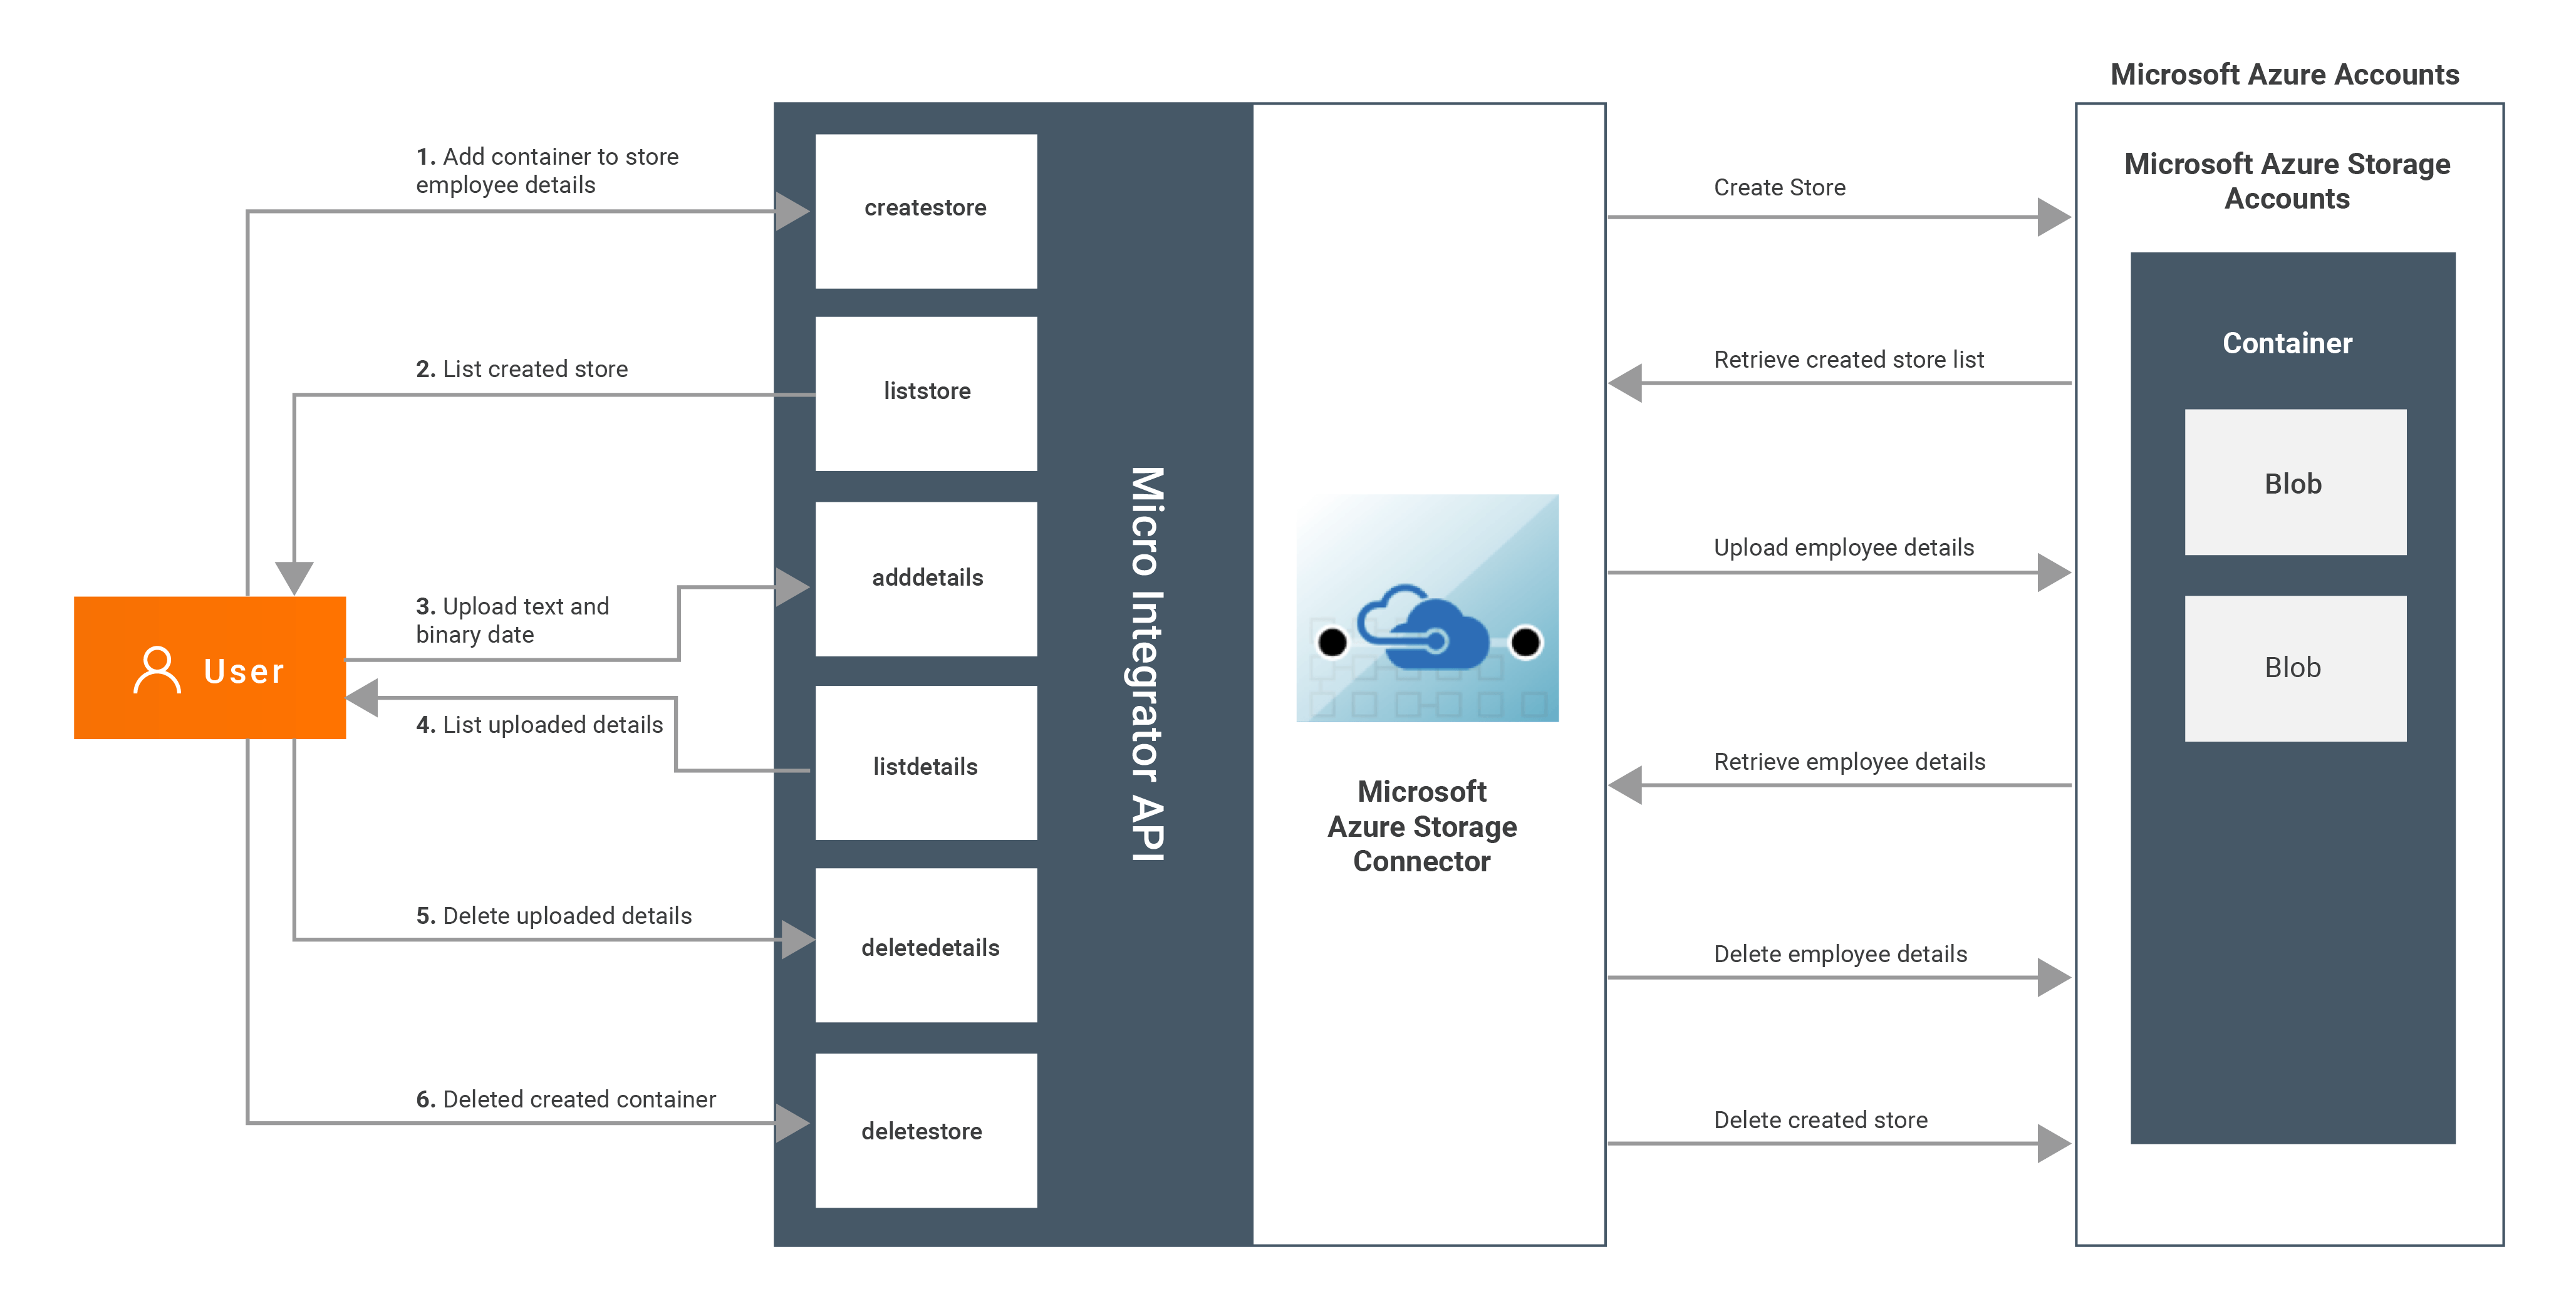 Microsoft Azure Storage Connector